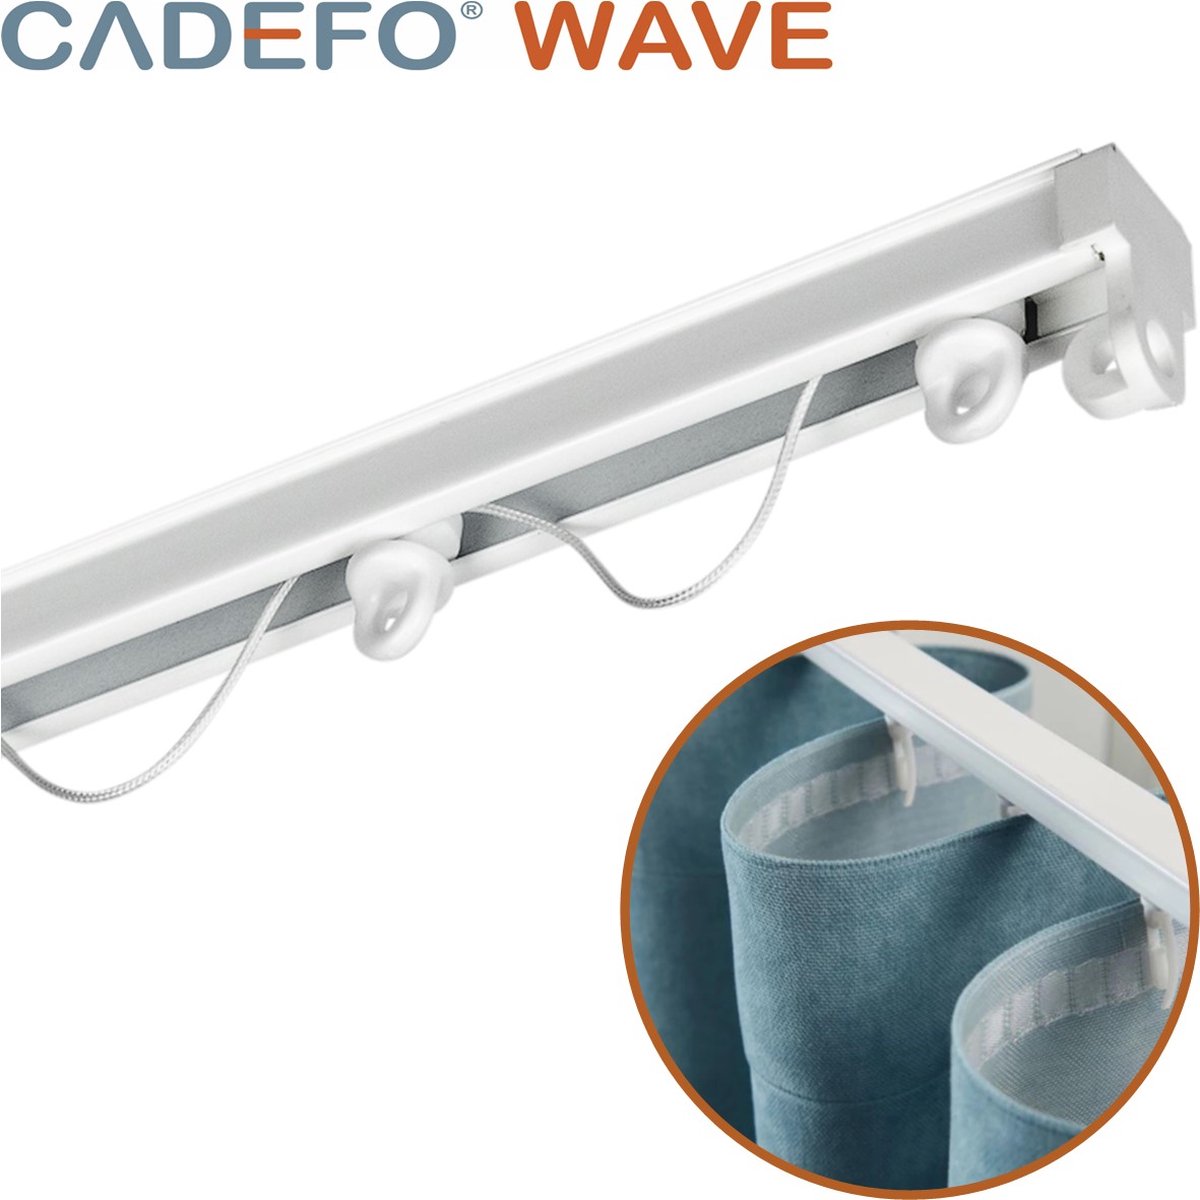 CADEFO WAVE (501 - 550 cm) Gordijnrails - Compleet op maat! - UIT 1 STUK - Leverbaar tot 6 meter - Plafondbevestiging - Lengte 507 cm